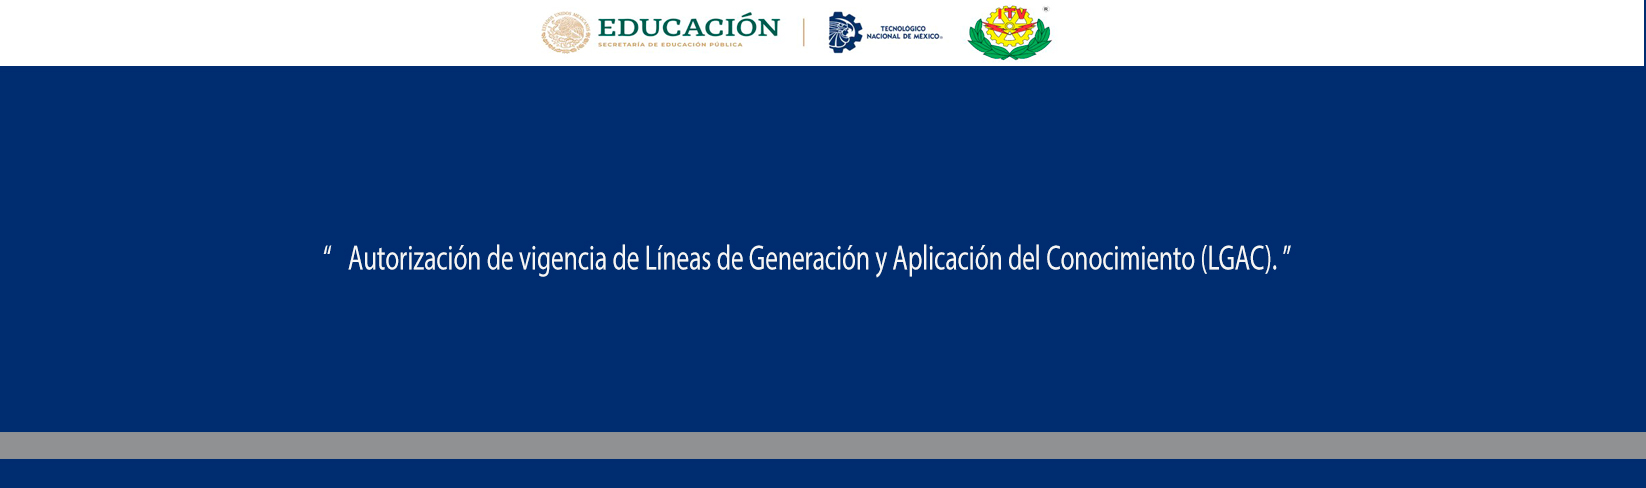 Autorización de vigencia de Líneas de Generación y Aplicación del Conocimiento (LGAC).